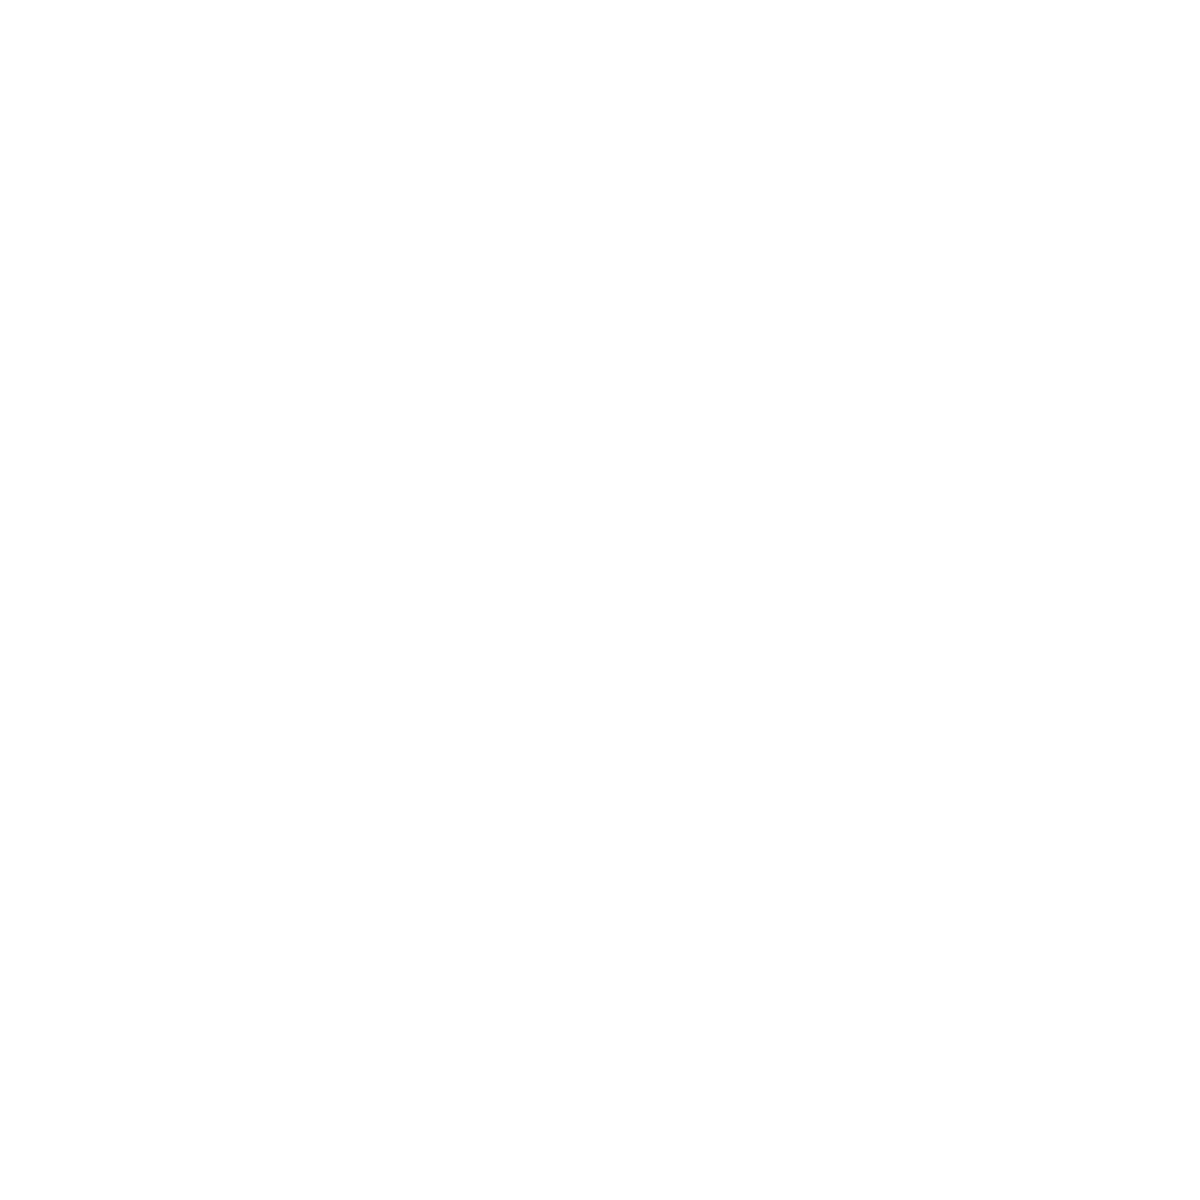 0vertur3 logo